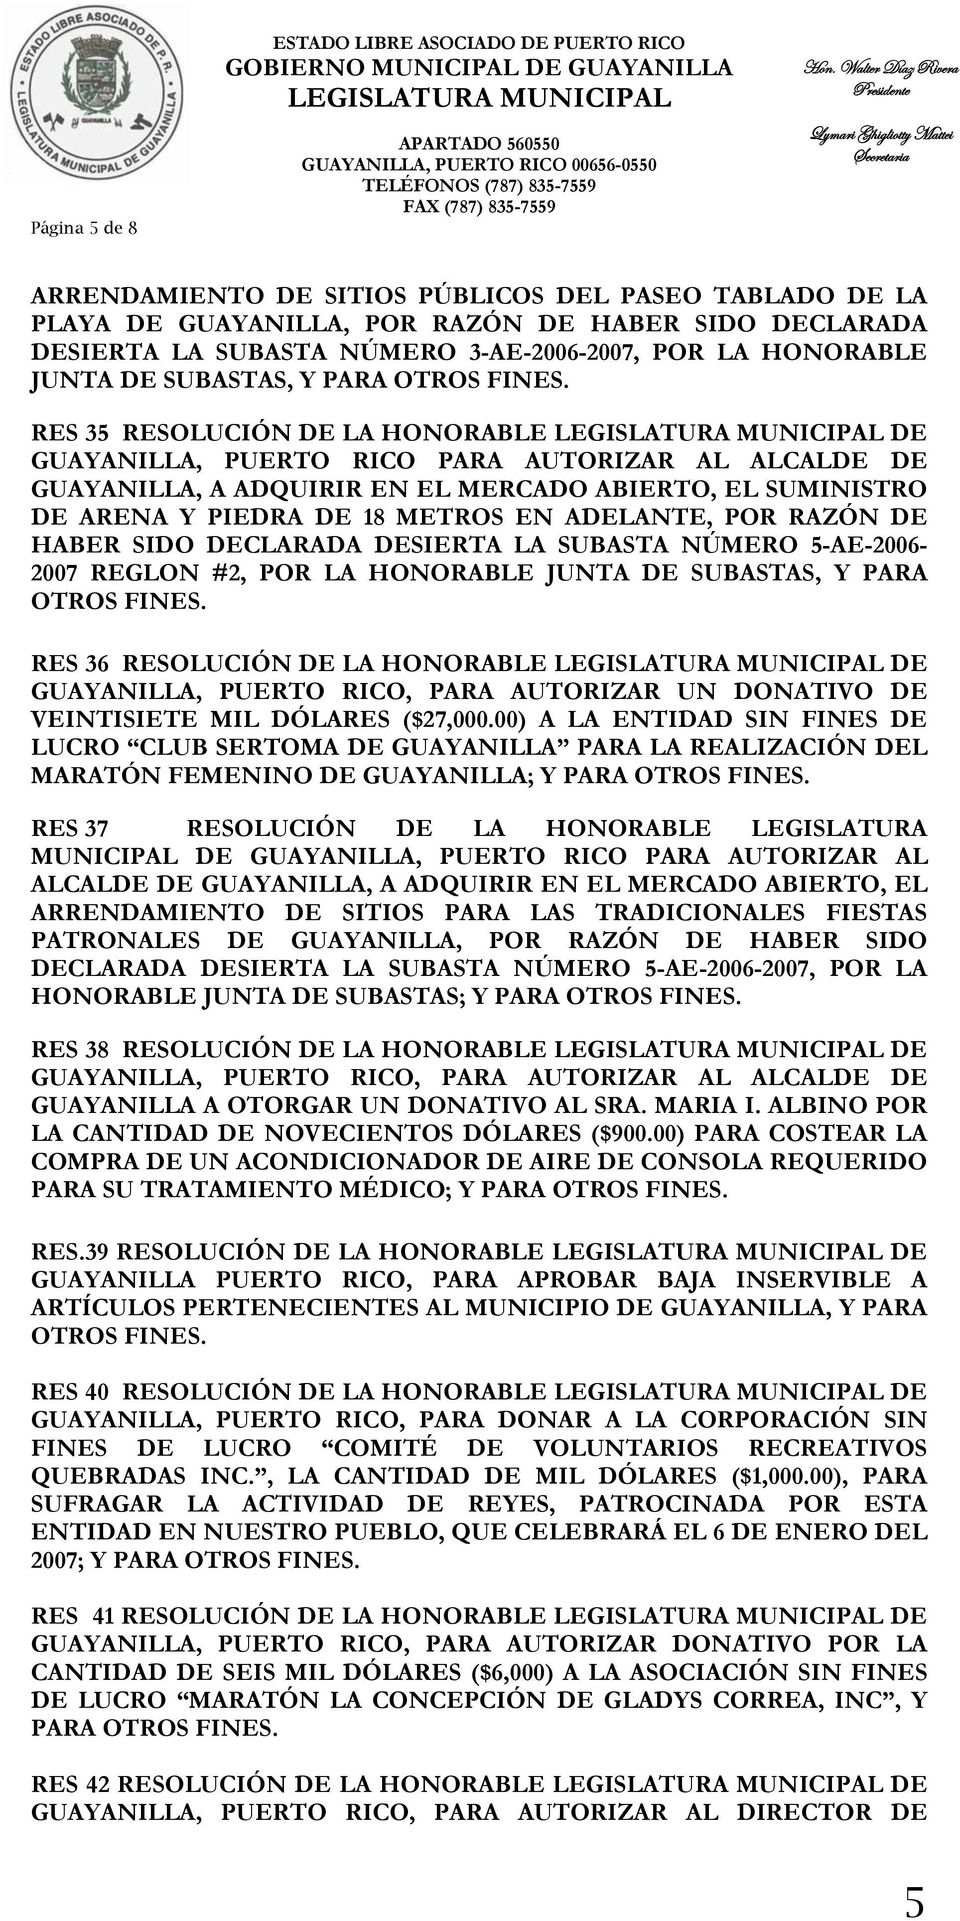 ADELANTE, POR RAZÓN DE HABER SIDO DECLARADA DESIERTA LA SUBASTA NÚMERO 5-AE-2006-2007 REGLON #2, POR LA HONORABLE JUNTA DE SUBASTAS, Y PARA OTROS RES 36 RESOLUCIÓN DE LA HONORABLE DE GUAYANILLA,